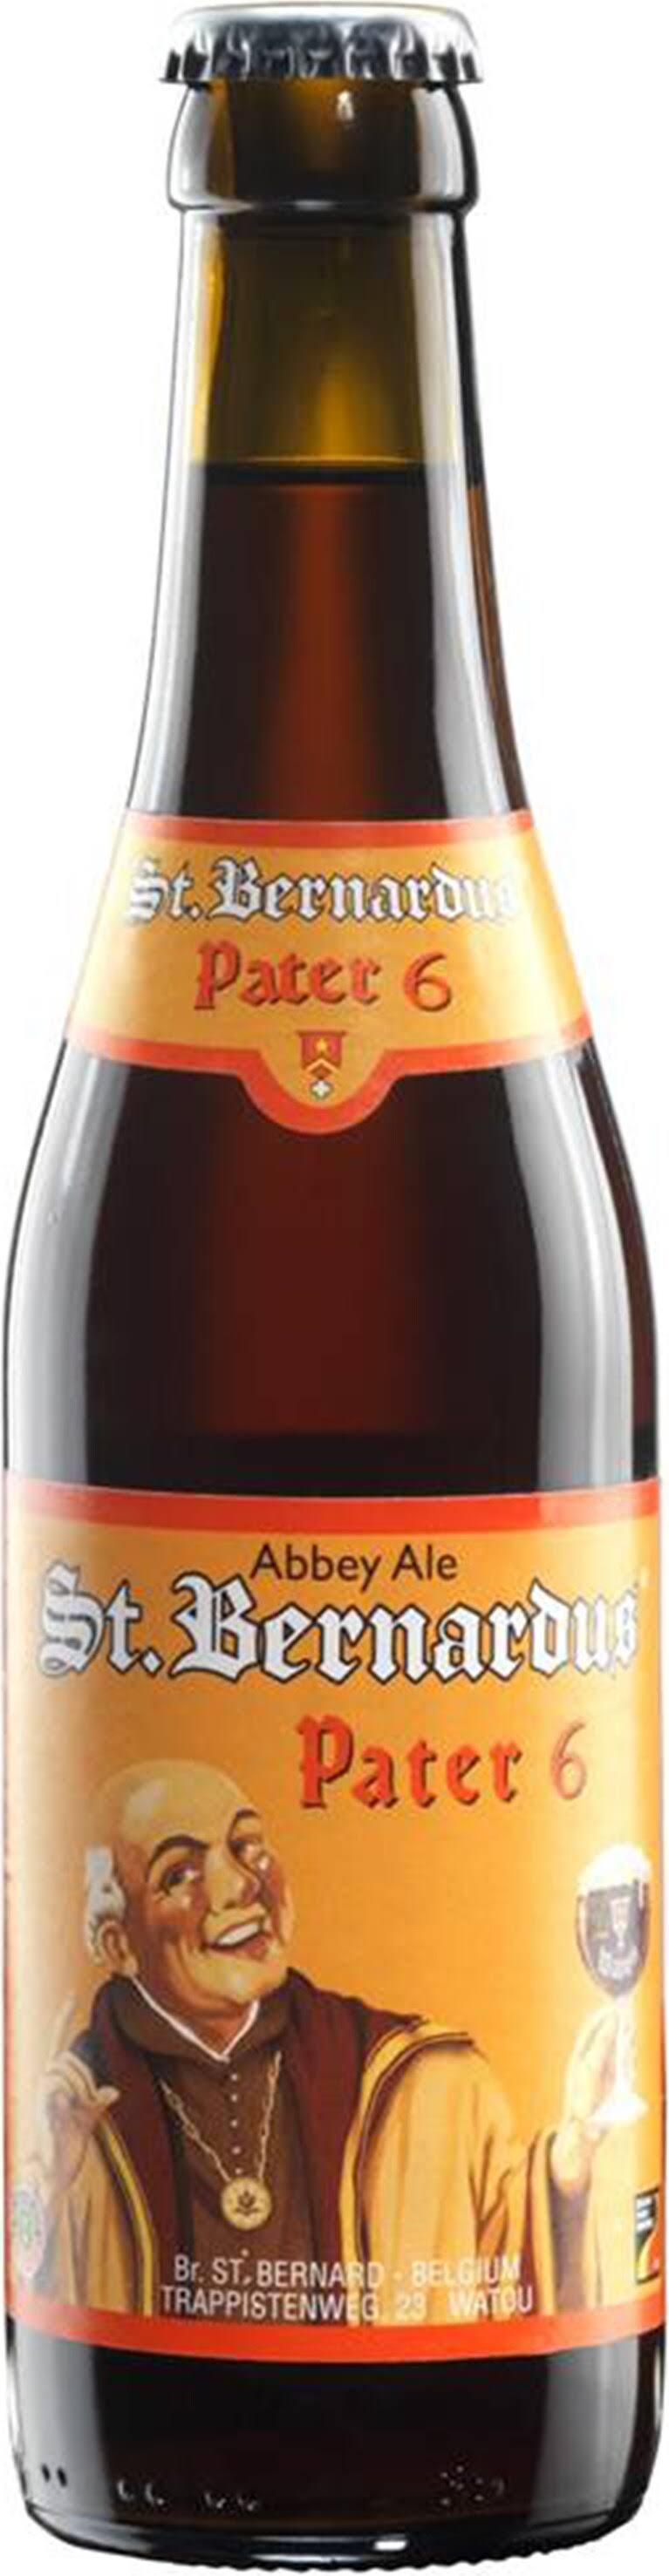 St. Bernardus Pater 6 Dubbel Beer